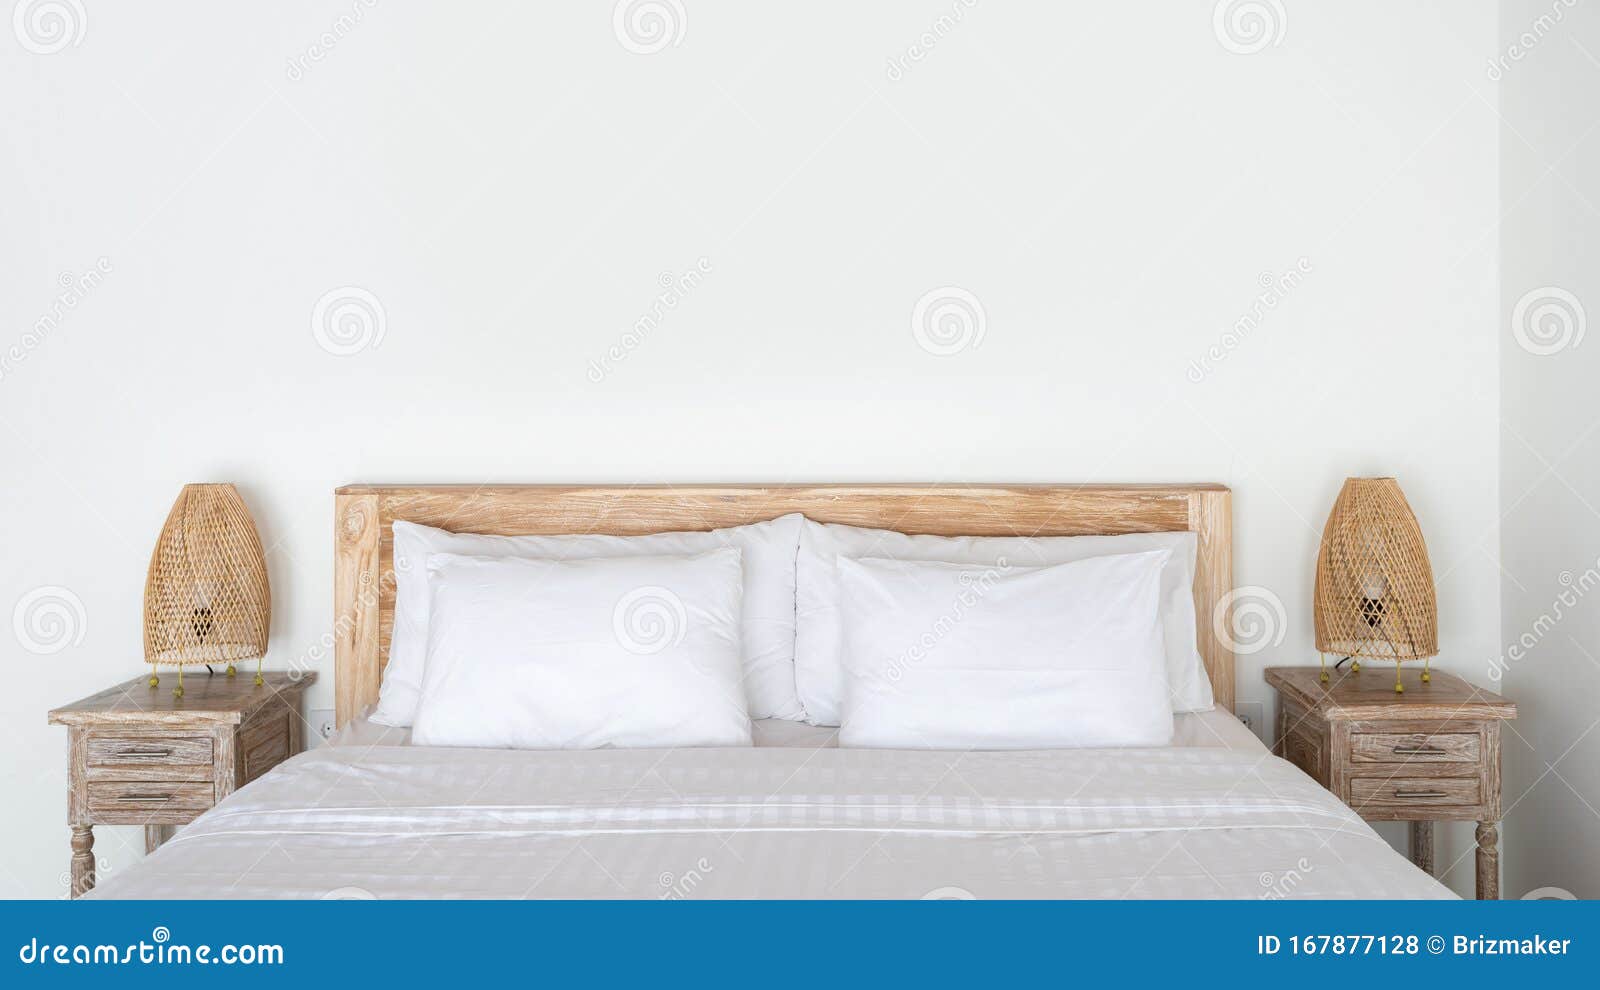 pad Riskeren bende Cozy Bed Met De Wicker-nachtlamp Op Bedtafel in Het Moderne Huis  Binnenshuis Stock Foto - Image of ontwerp, toebehoren: 167877128